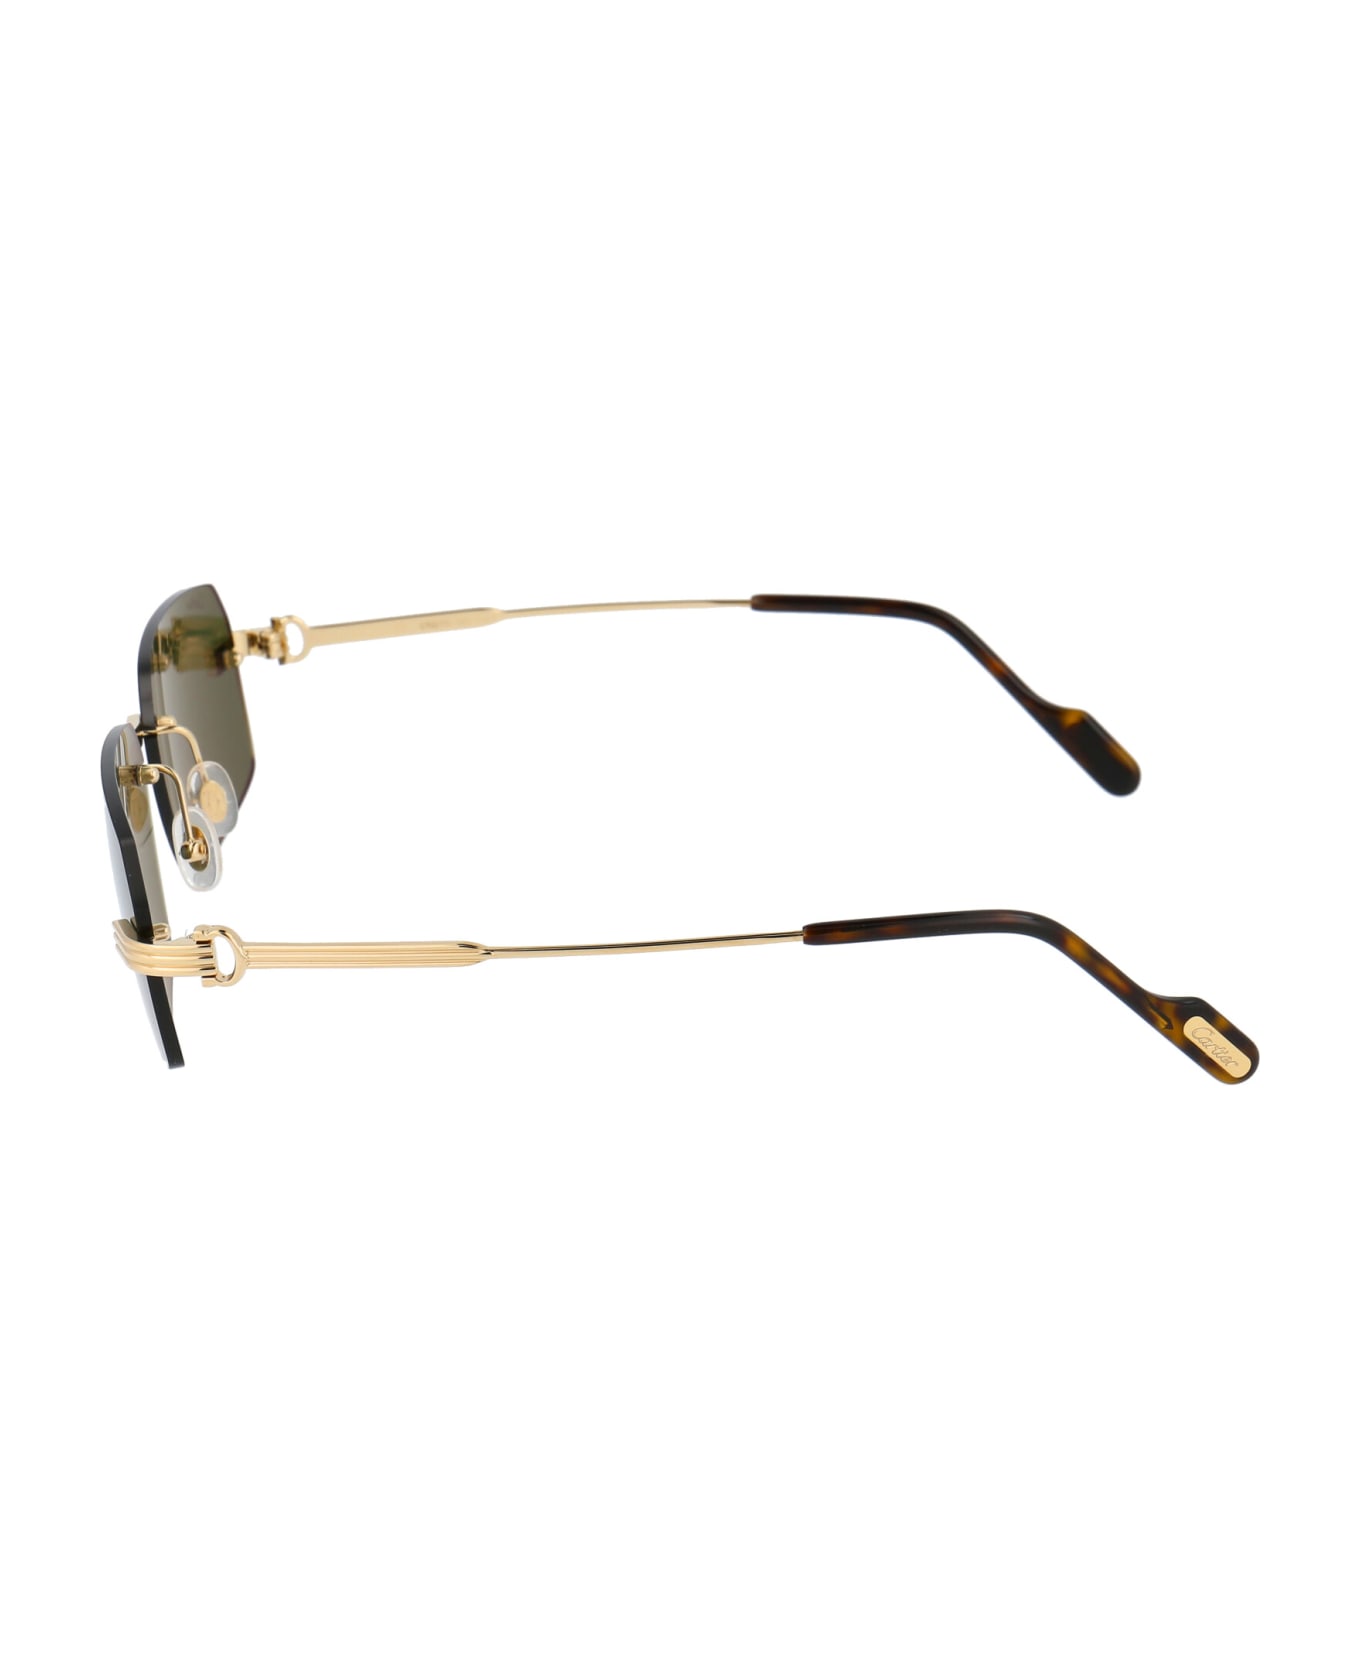 Cartier Eyewear Ct0271s Sunglasses - 002 GOLD GOLD GREEN